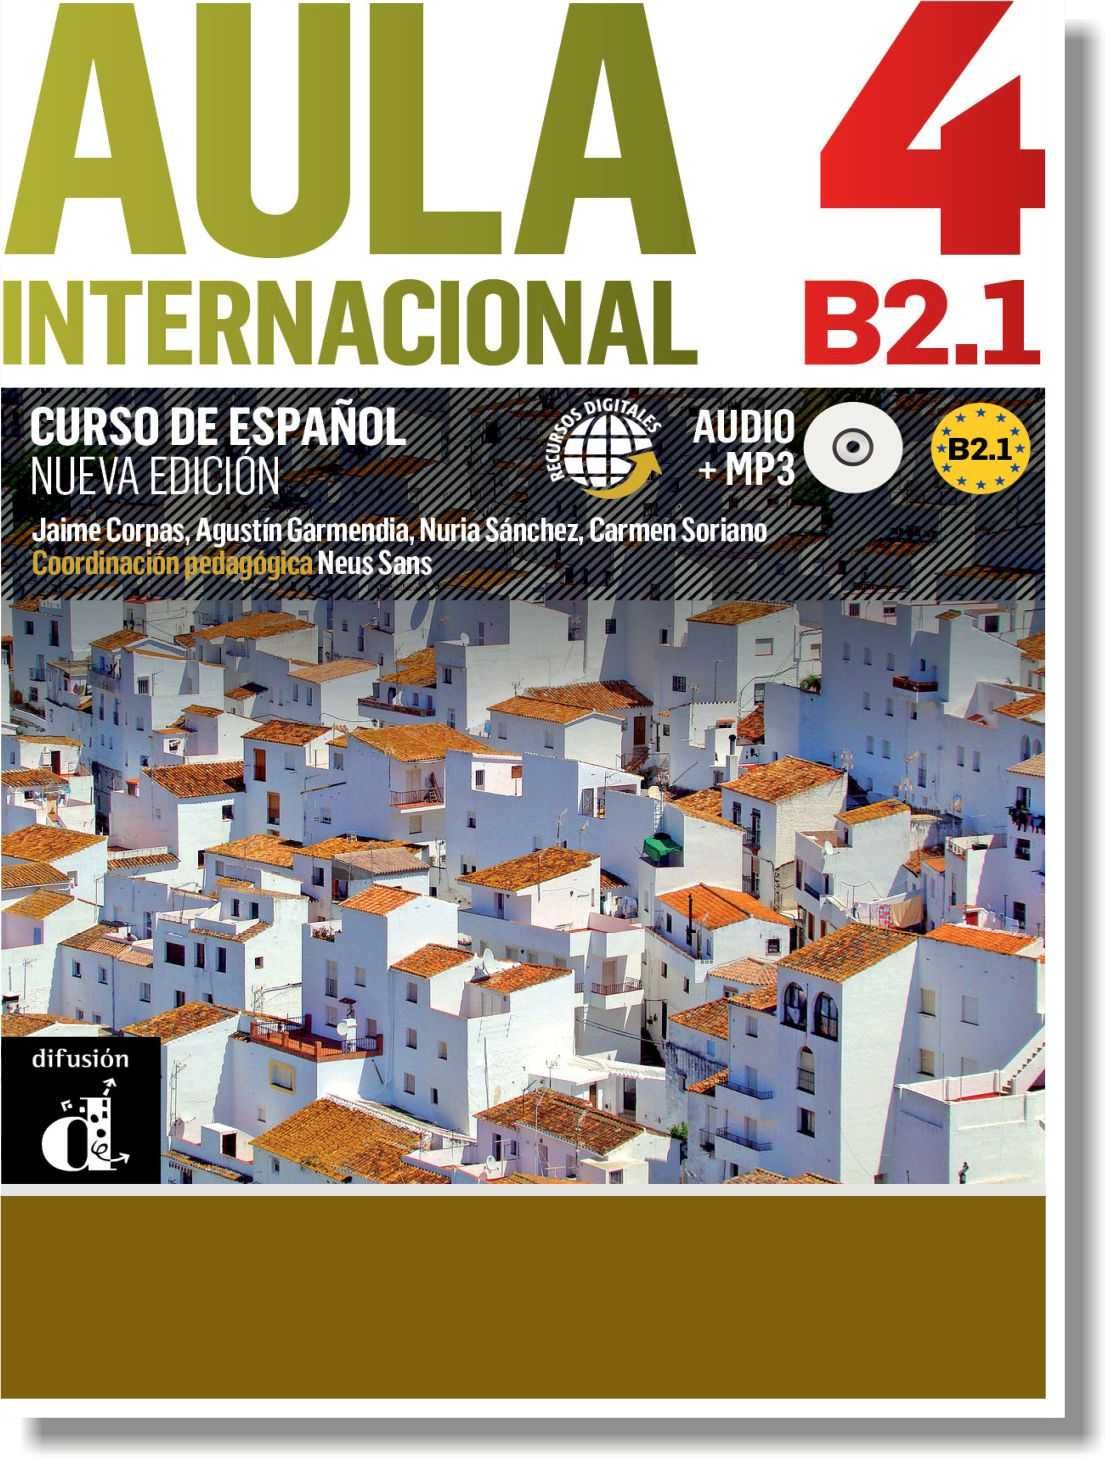 Учебники испанского языка AULA Internacional Nueva Edicion 1-5